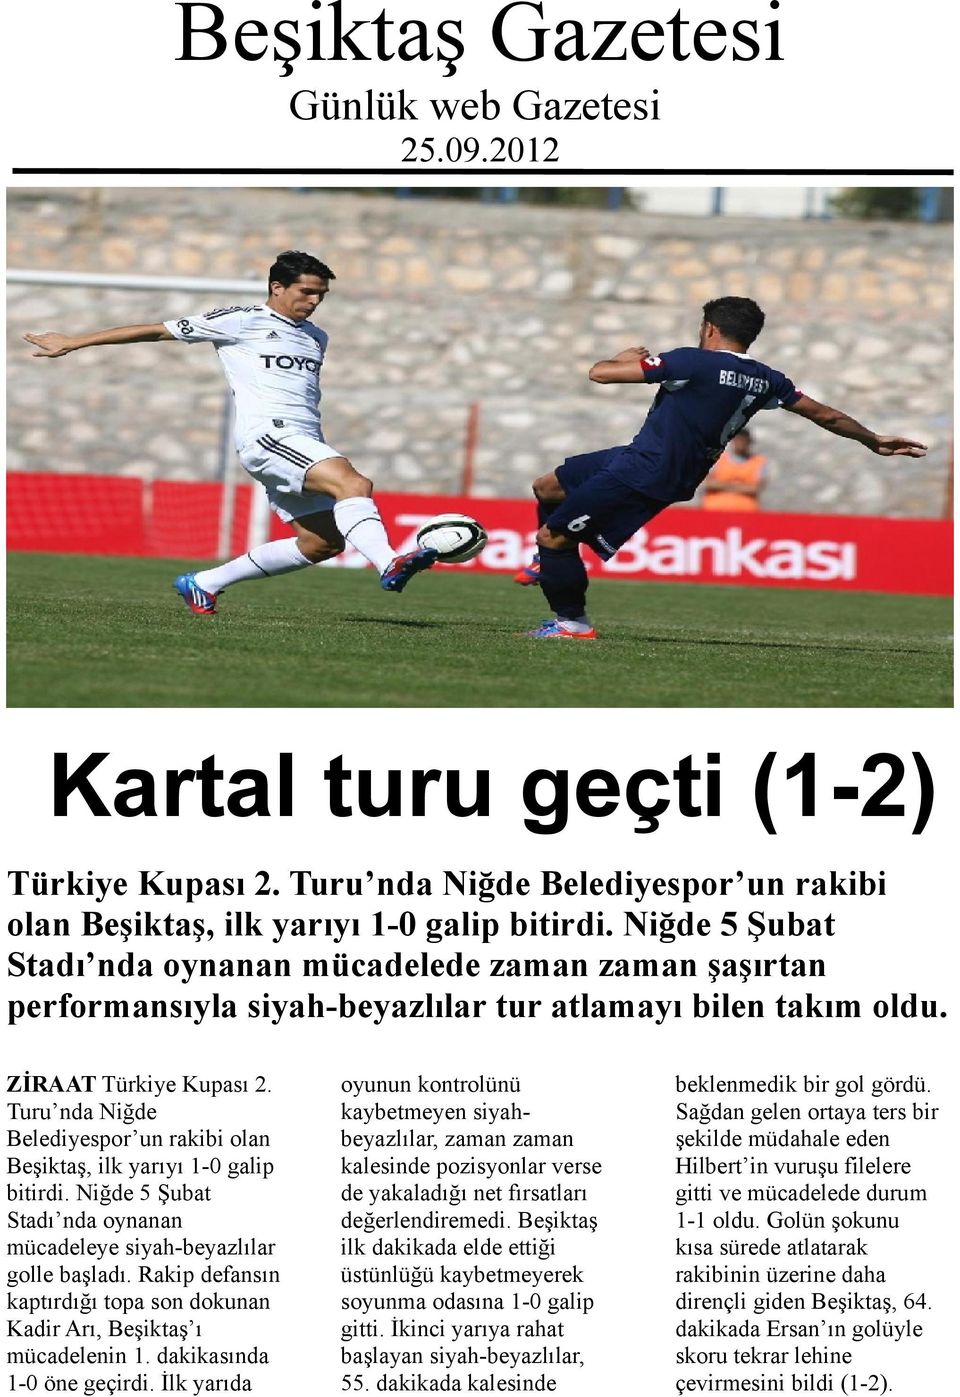 Turu nda Niğde Belediyespor un rakibi olan Beşiktaş, ilk yarıyı 1-0 galip bitirdi. Niğde 5 Şubat Stadı nda oynanan mücadeleye siyah-beyazlılar golle başladı.